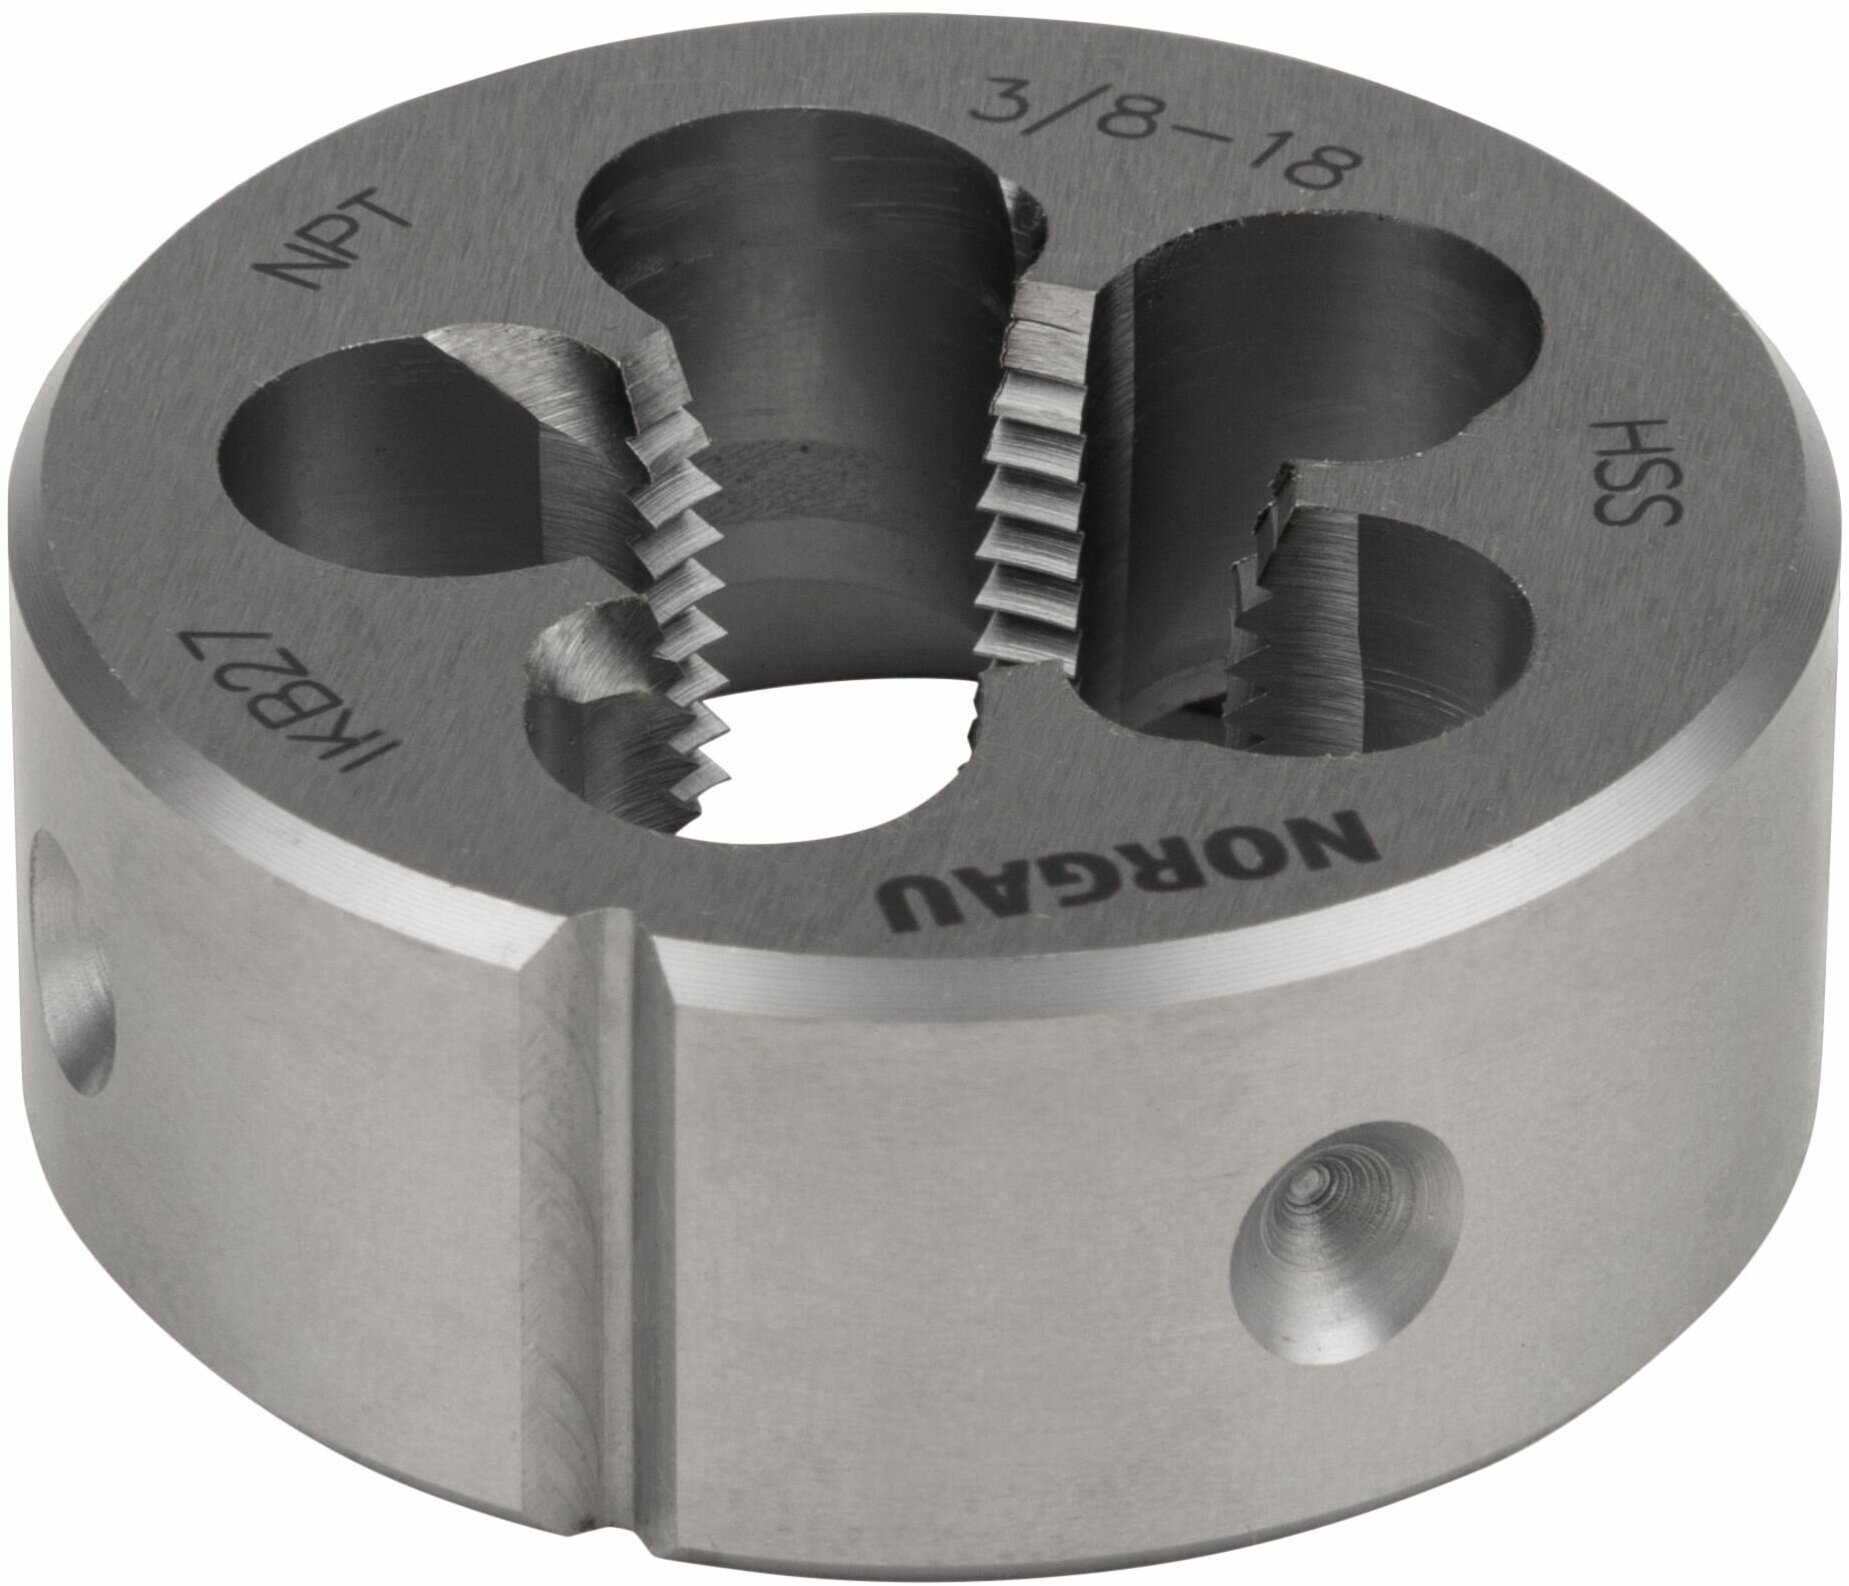 Плашка NPT 3/8х18 дюйма диаметр 45 мм NORGAU Industrial для обработки конической резьбы с углом 60 по DIN223 HSS